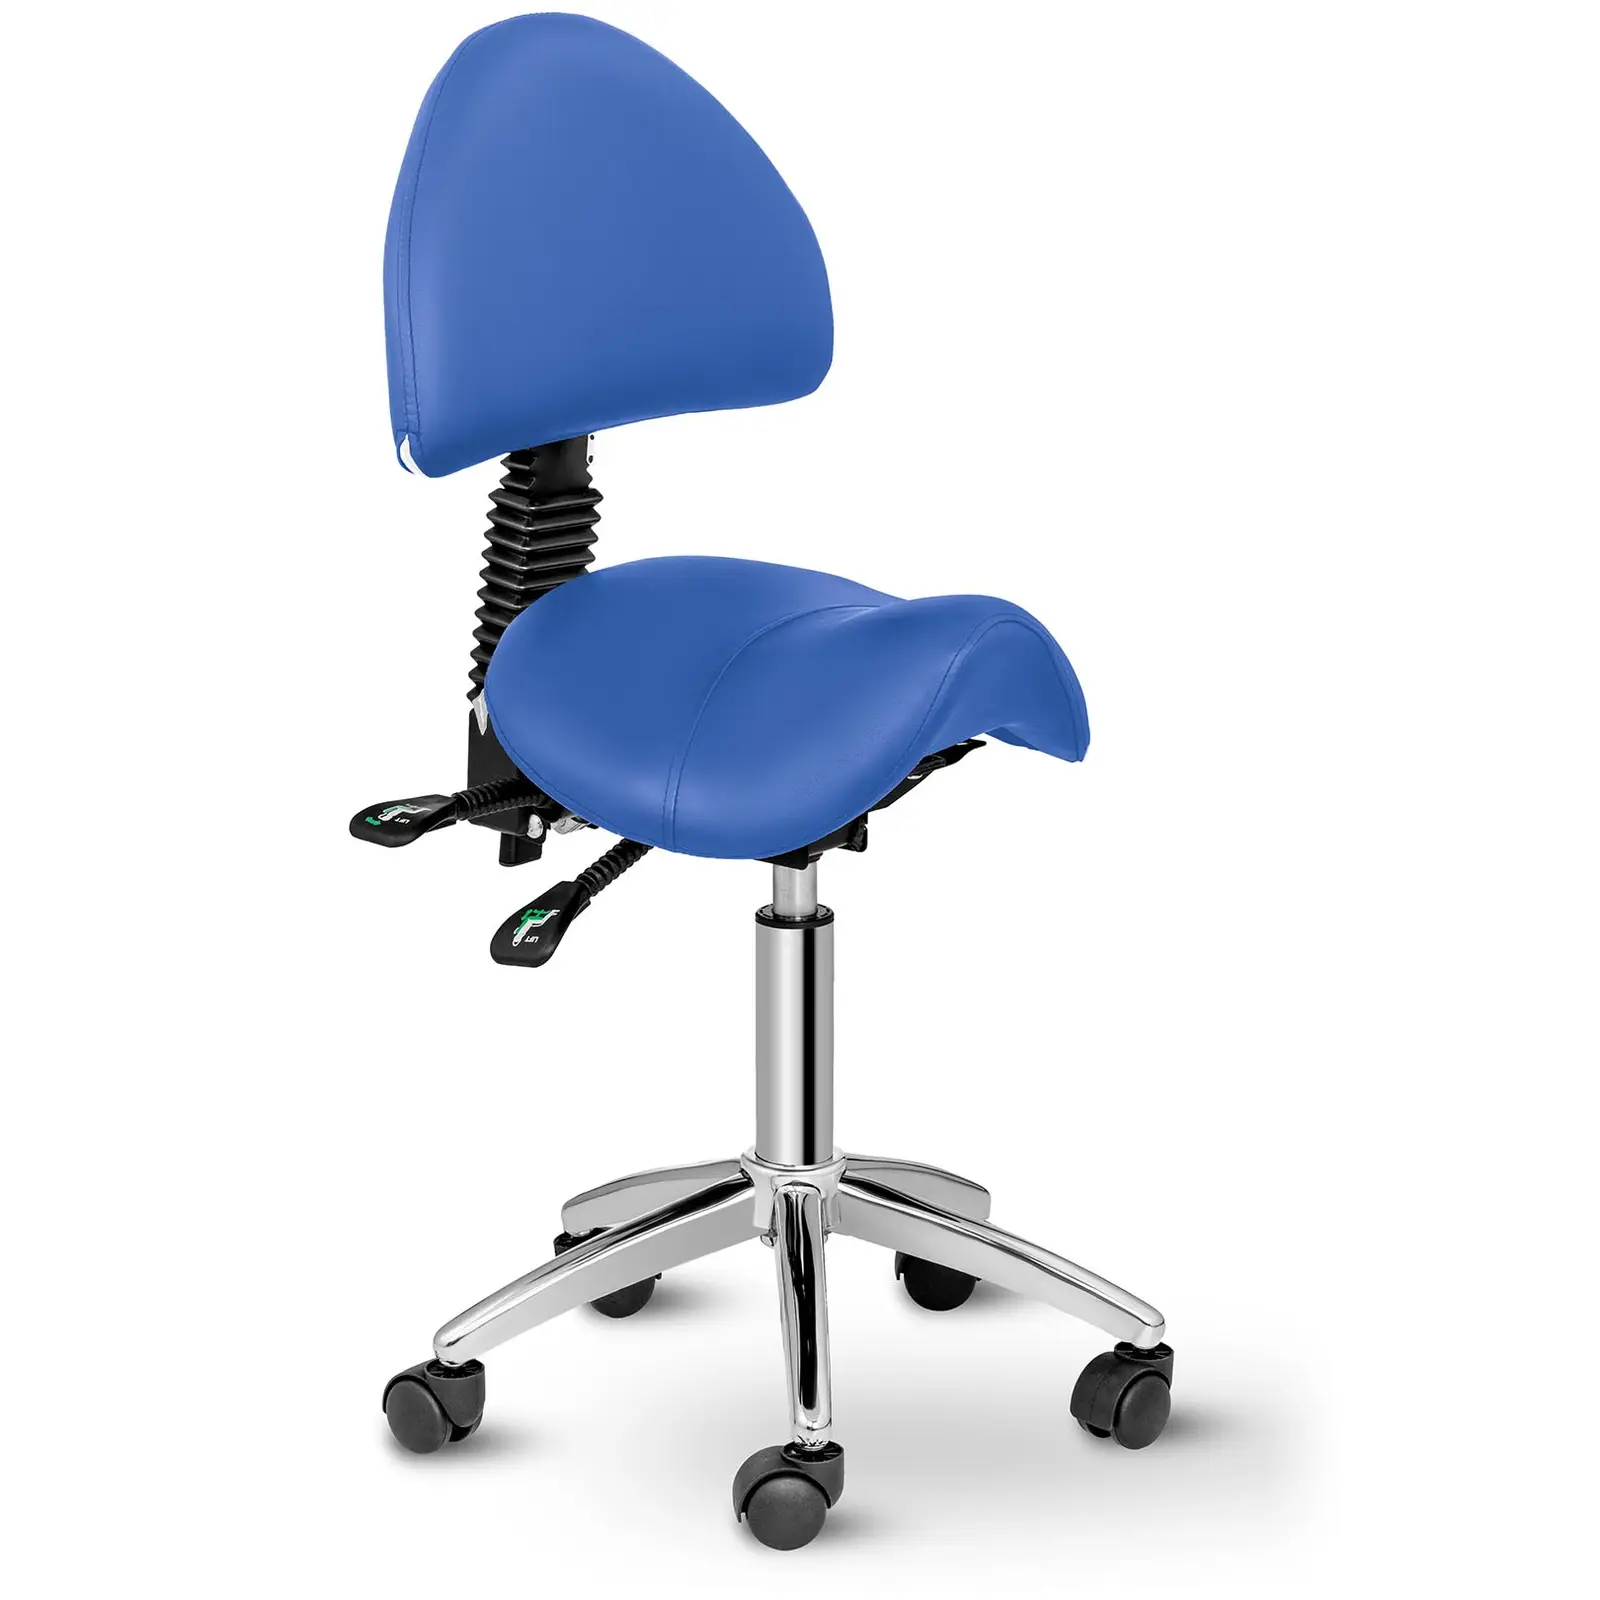 Sedlová židle 550–690 mm 150 kg modrá - Sedlové židle physa